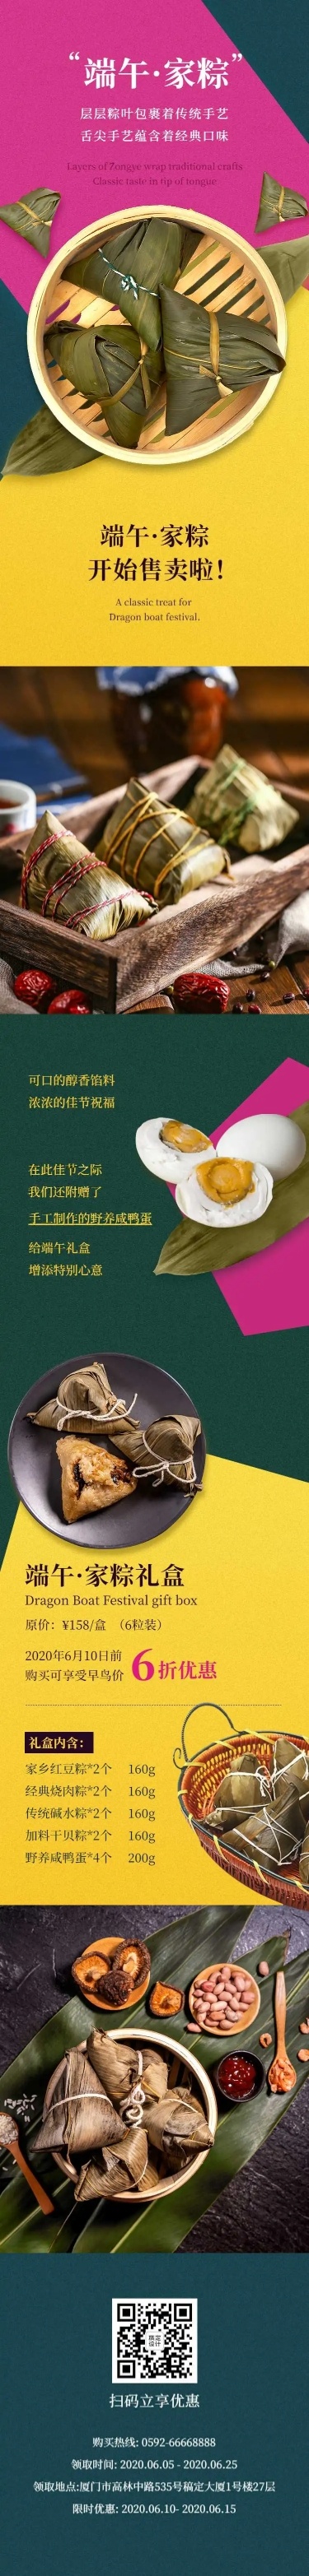 H5长页端午节产品粽子营销推广